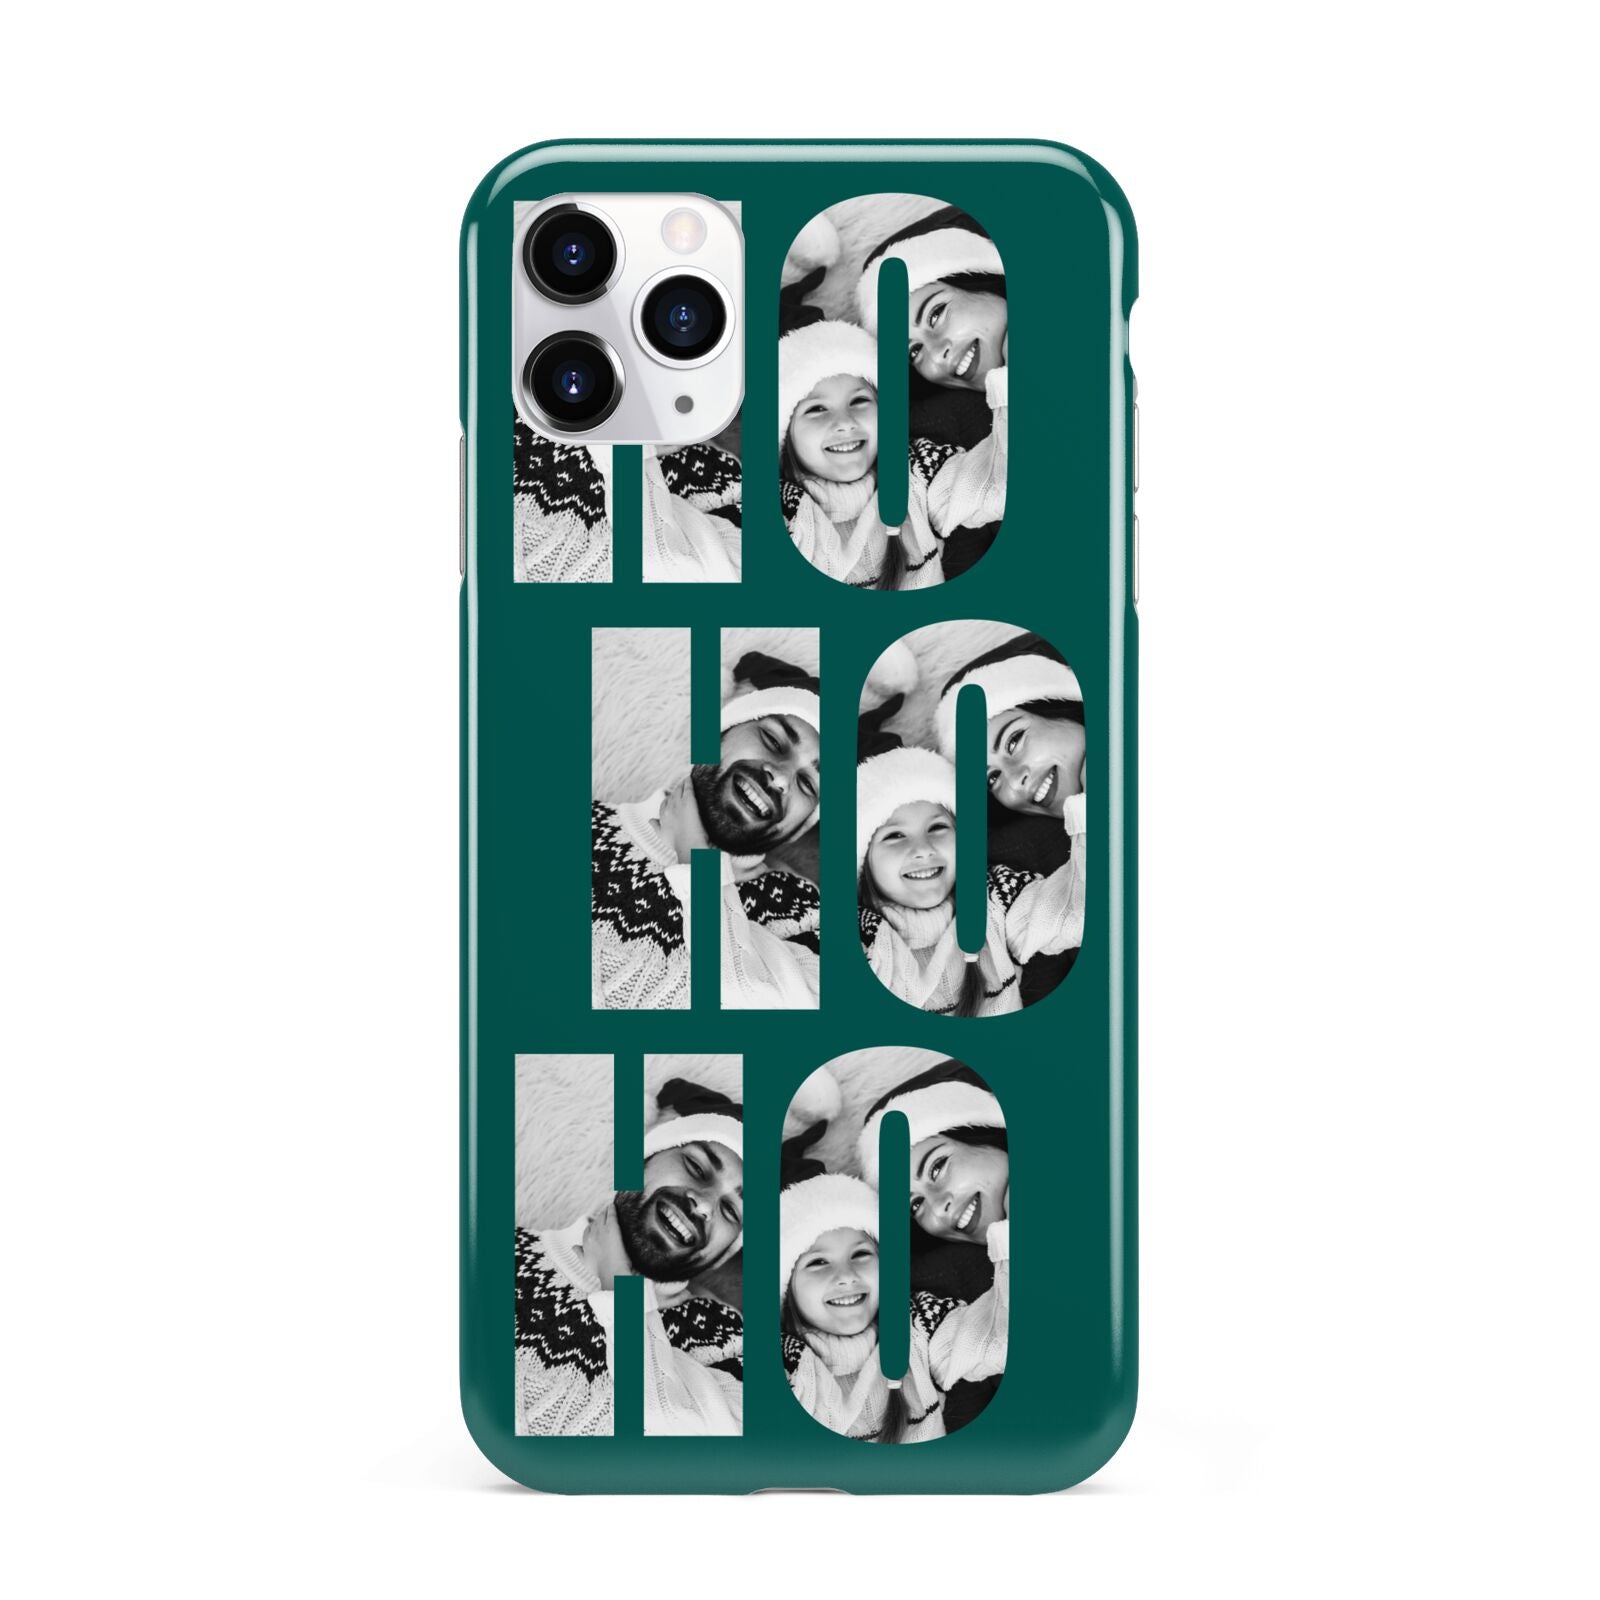 Green Ho Ho Ho Photo Upload Christmas iPhone 11 Pro Max 3D Tough Case